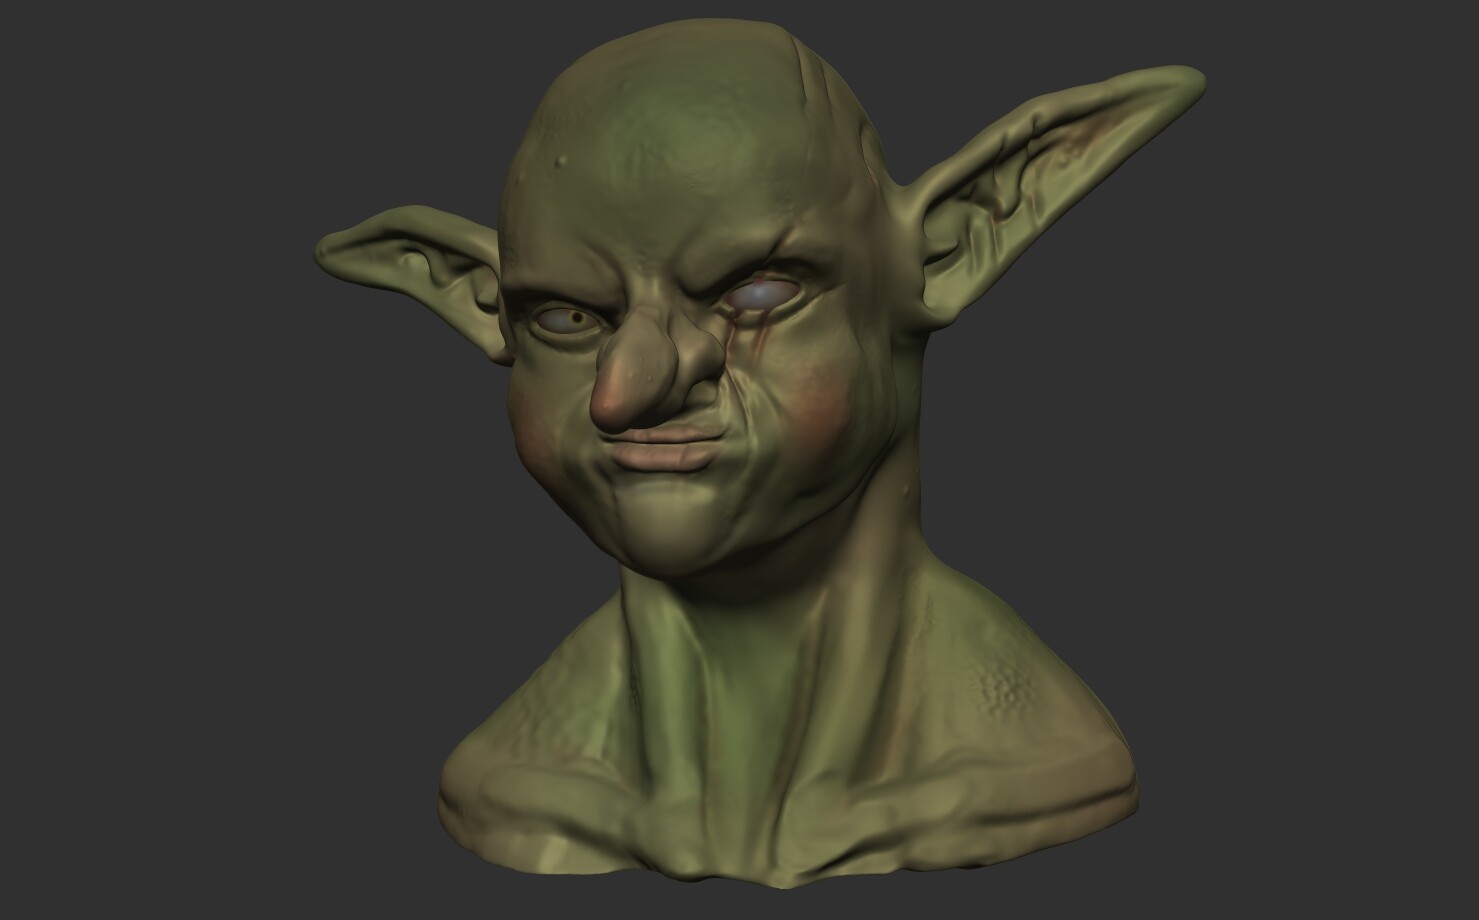 ArtStation - First Goblin Head